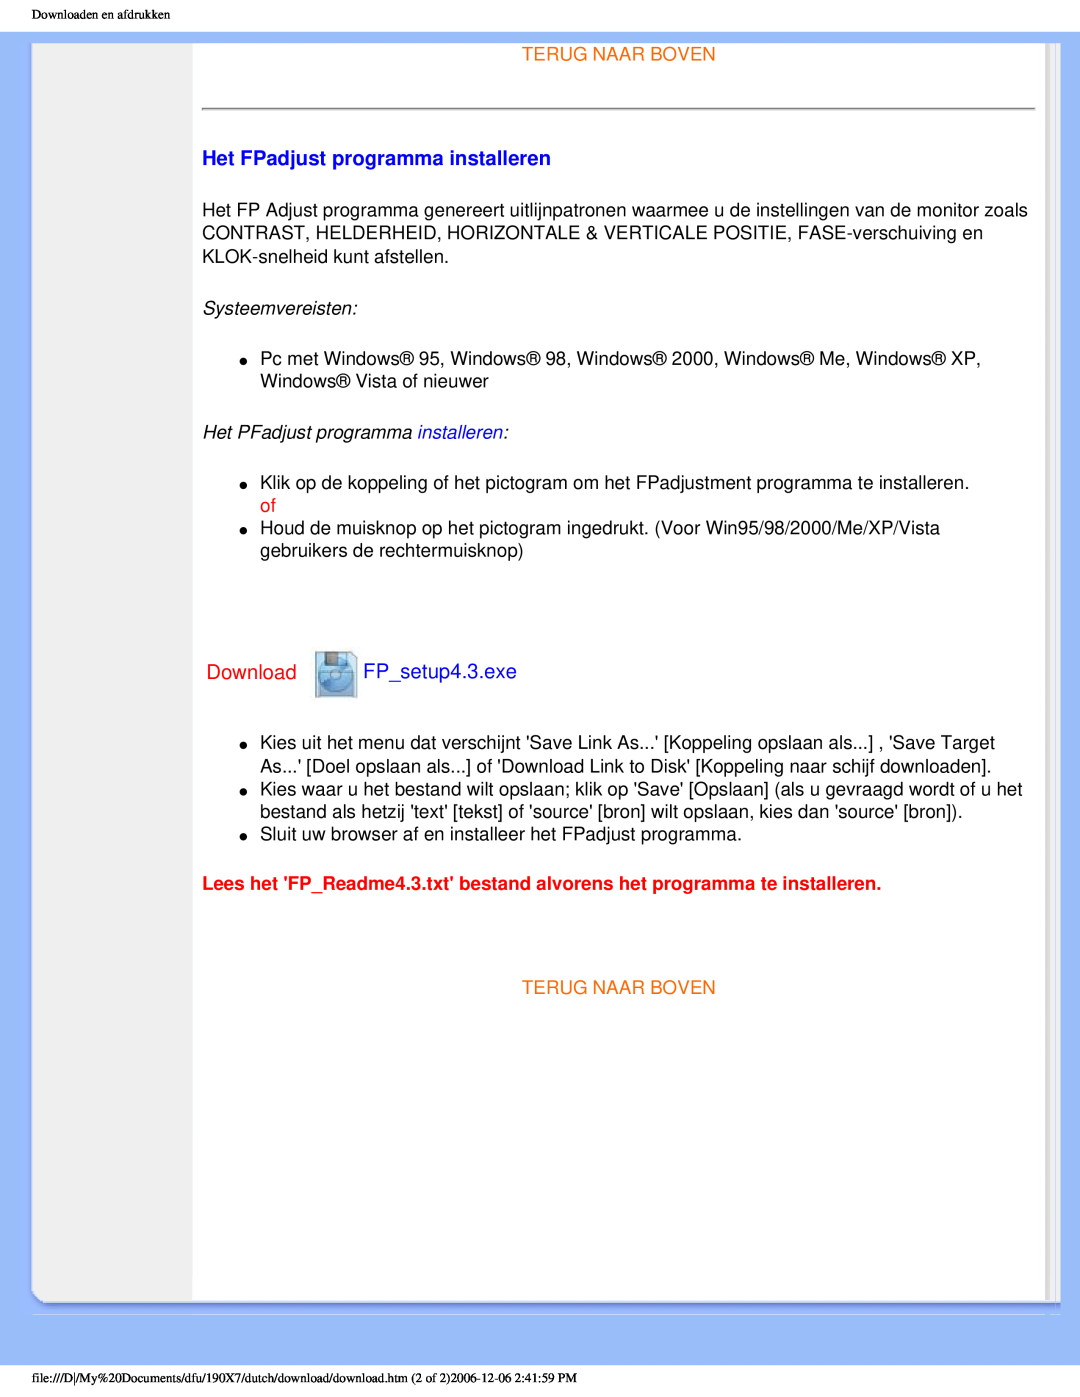 Philips 190X7 user manual Het FPadjust programma installeren, Download FP_setup4.3.exe, Terug Naar Boven 